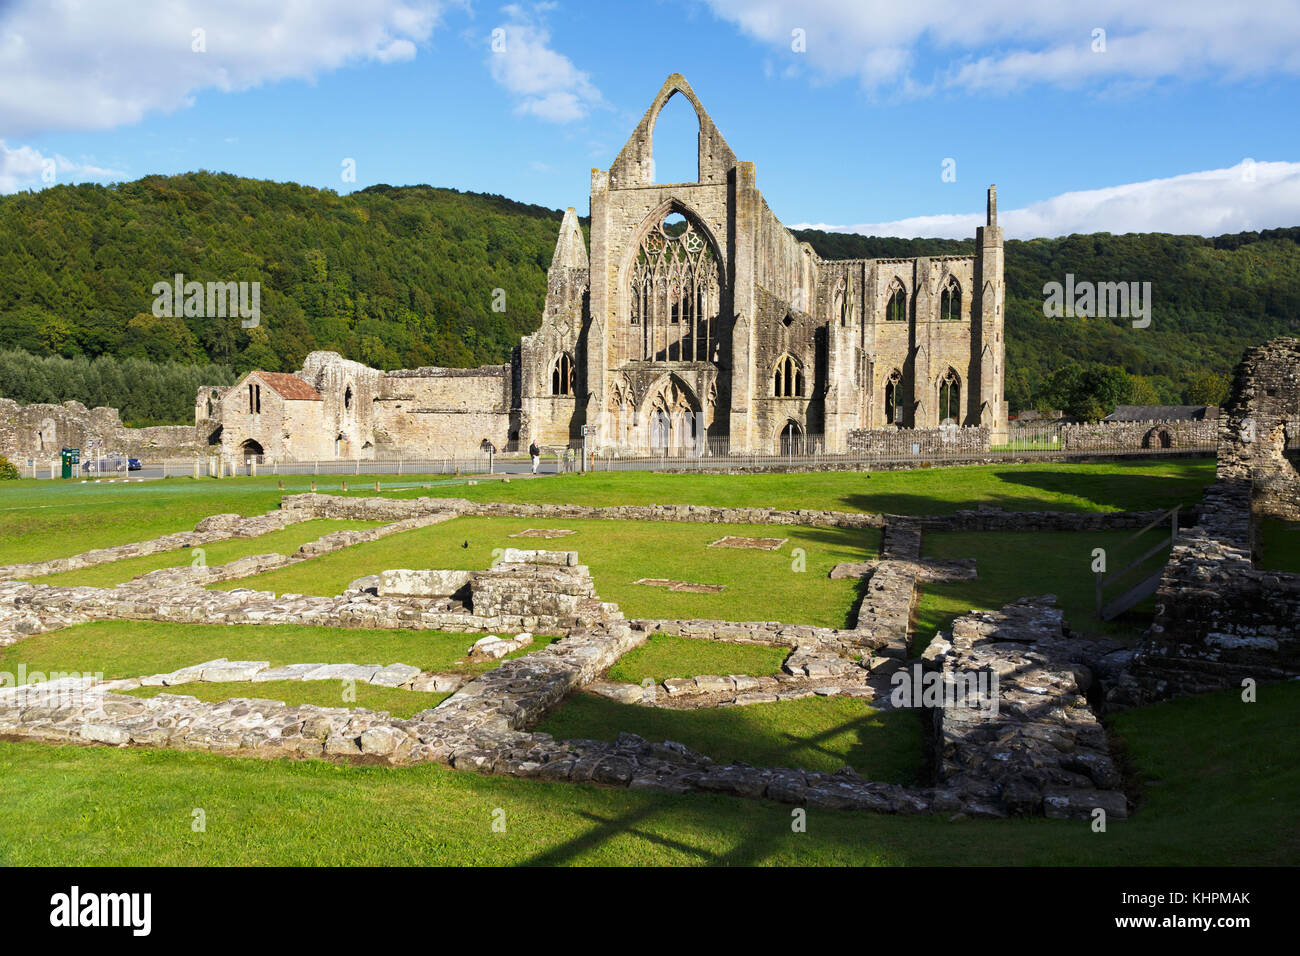 Abbaye de Tintern, Monmouthshire, Wales, Royaume-Uni. l'abbaye a été fondée en 1131. Banque D'Images